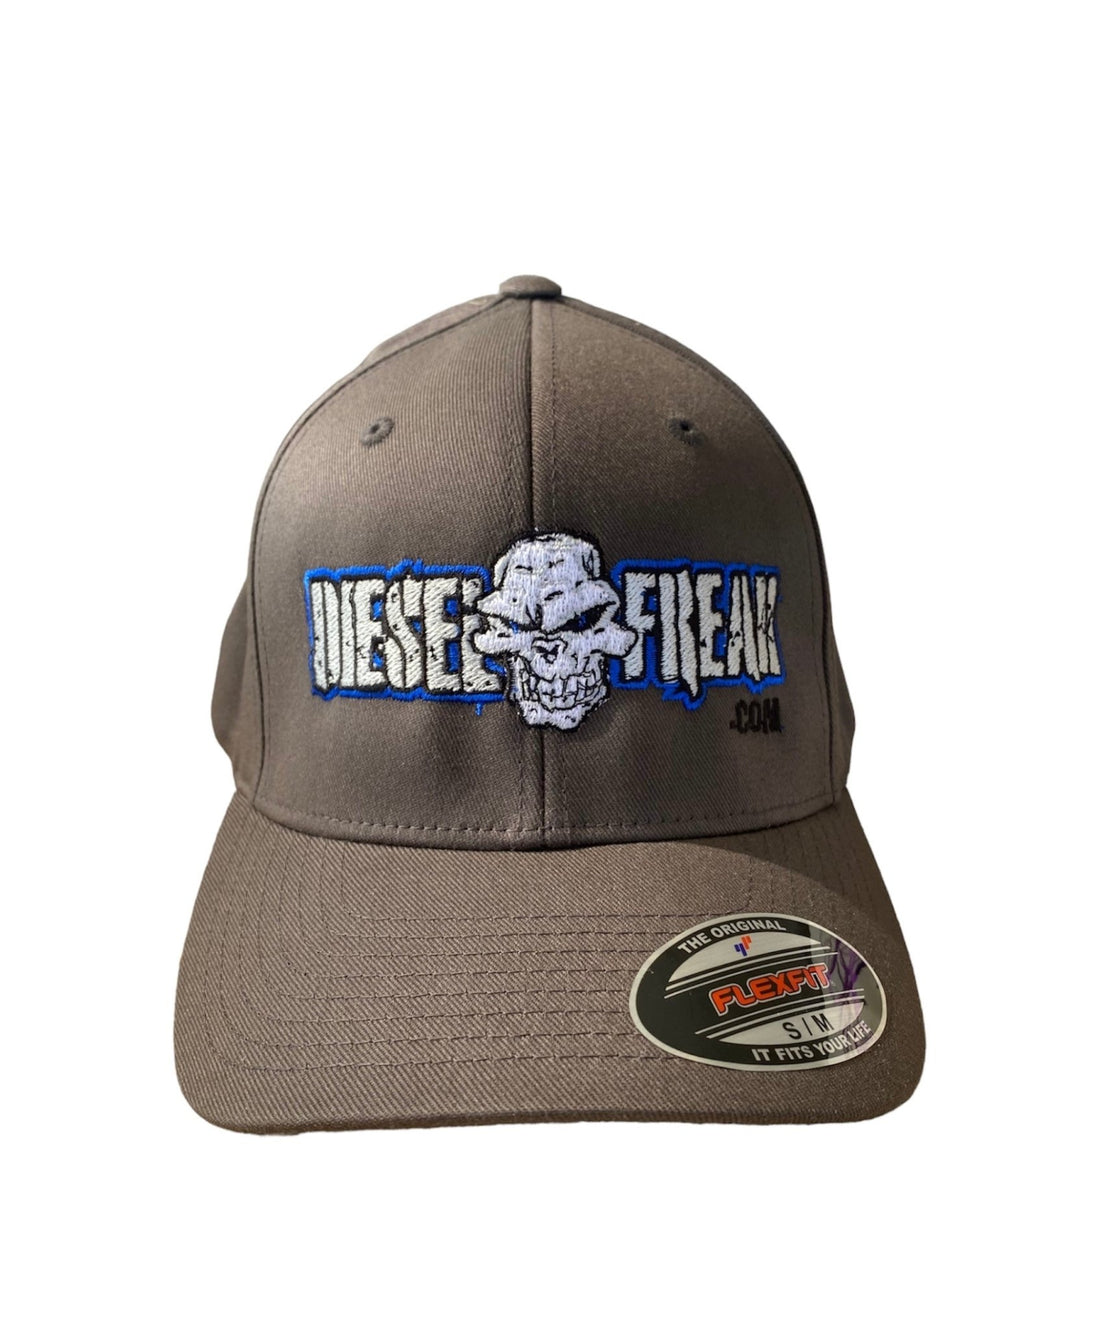 Grey and Blue Diesel Freak Hat - Diesel Freak